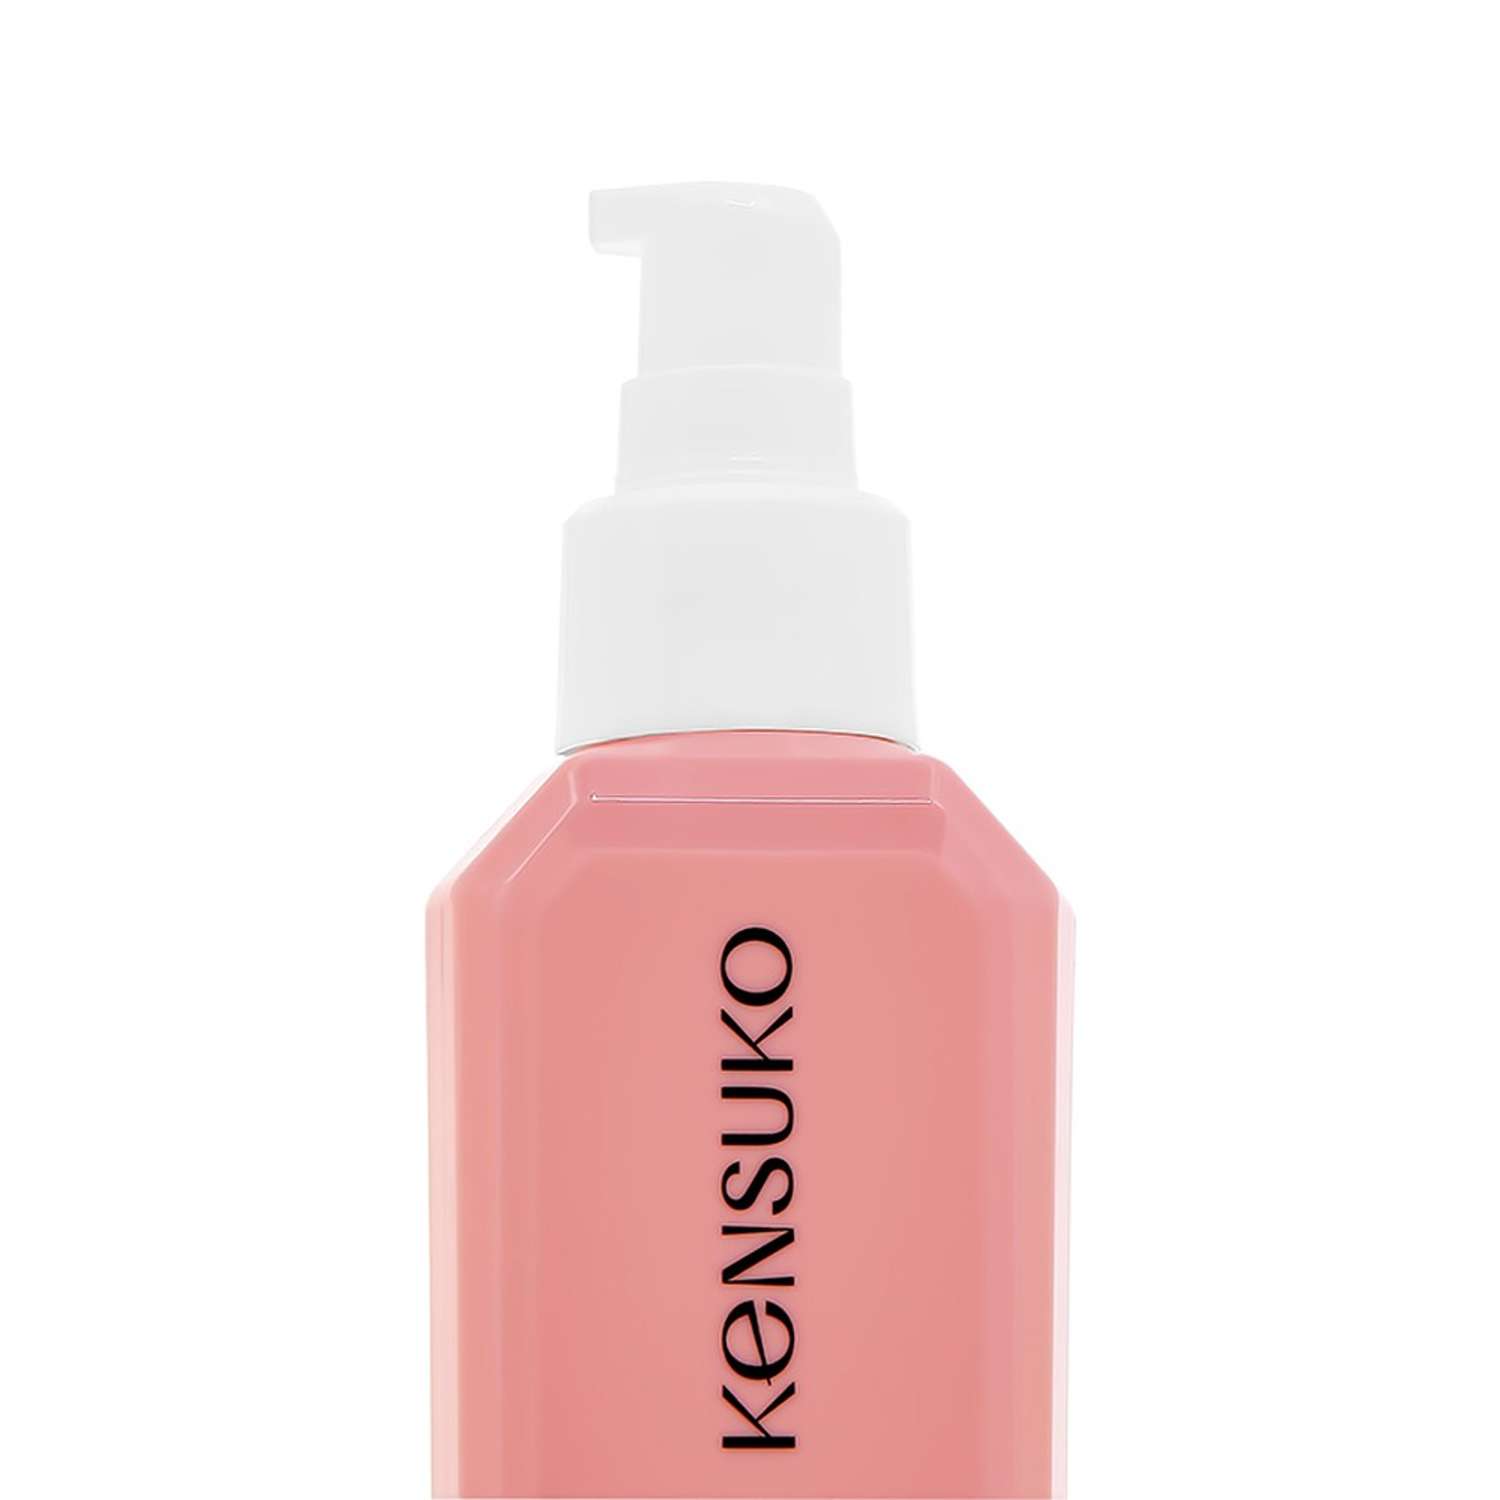 Сыворотка для волос KENSUKO Scalp-relief балансирующая 150 мл - фото 4